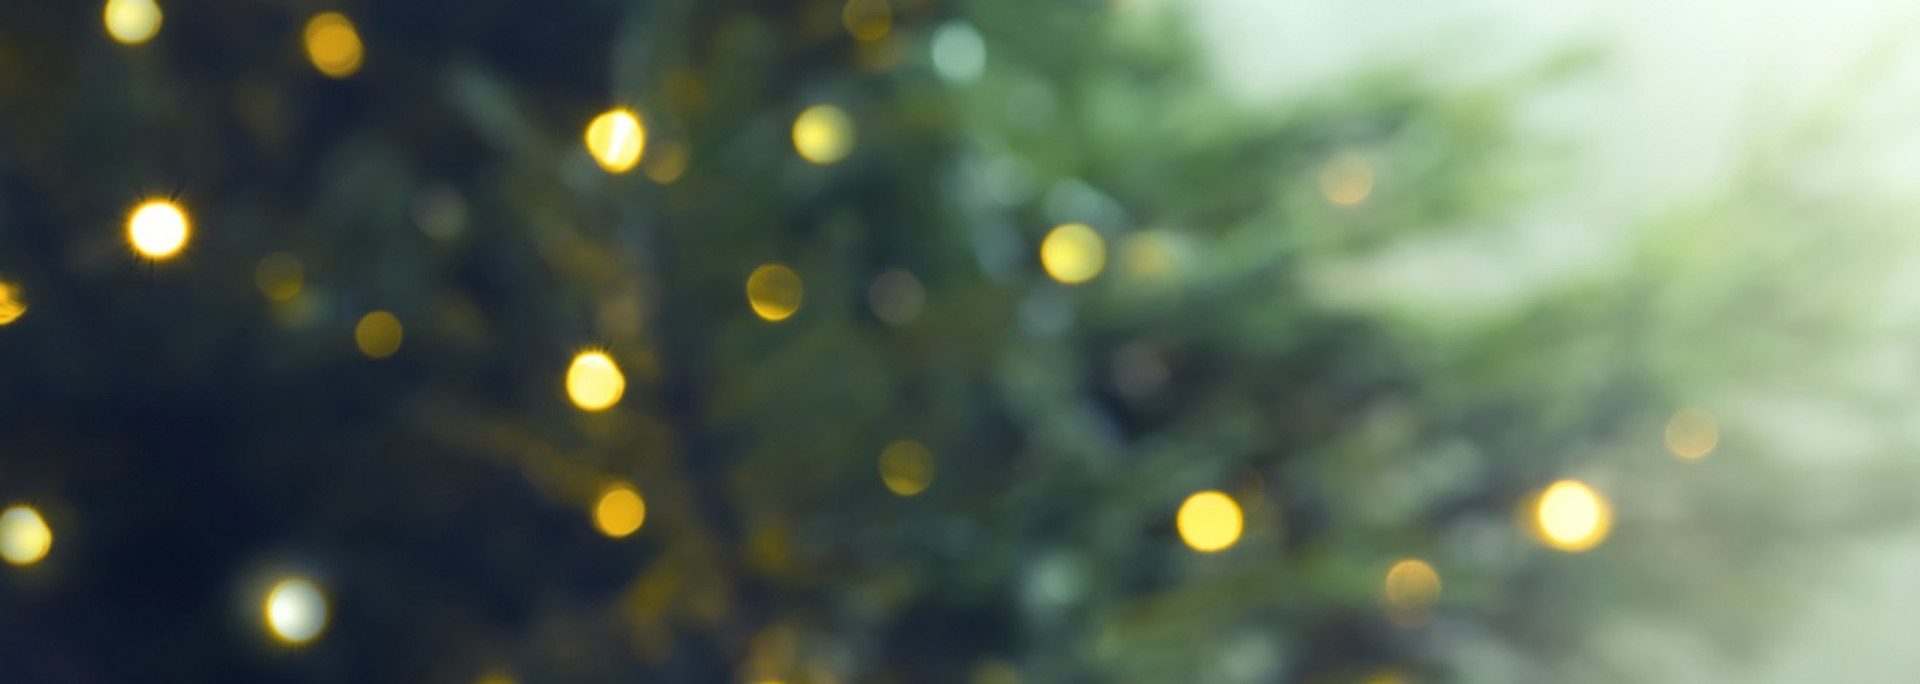 Де ялинка найкрасивіша? Фотогалерея різдвяних дерев у різних містах України